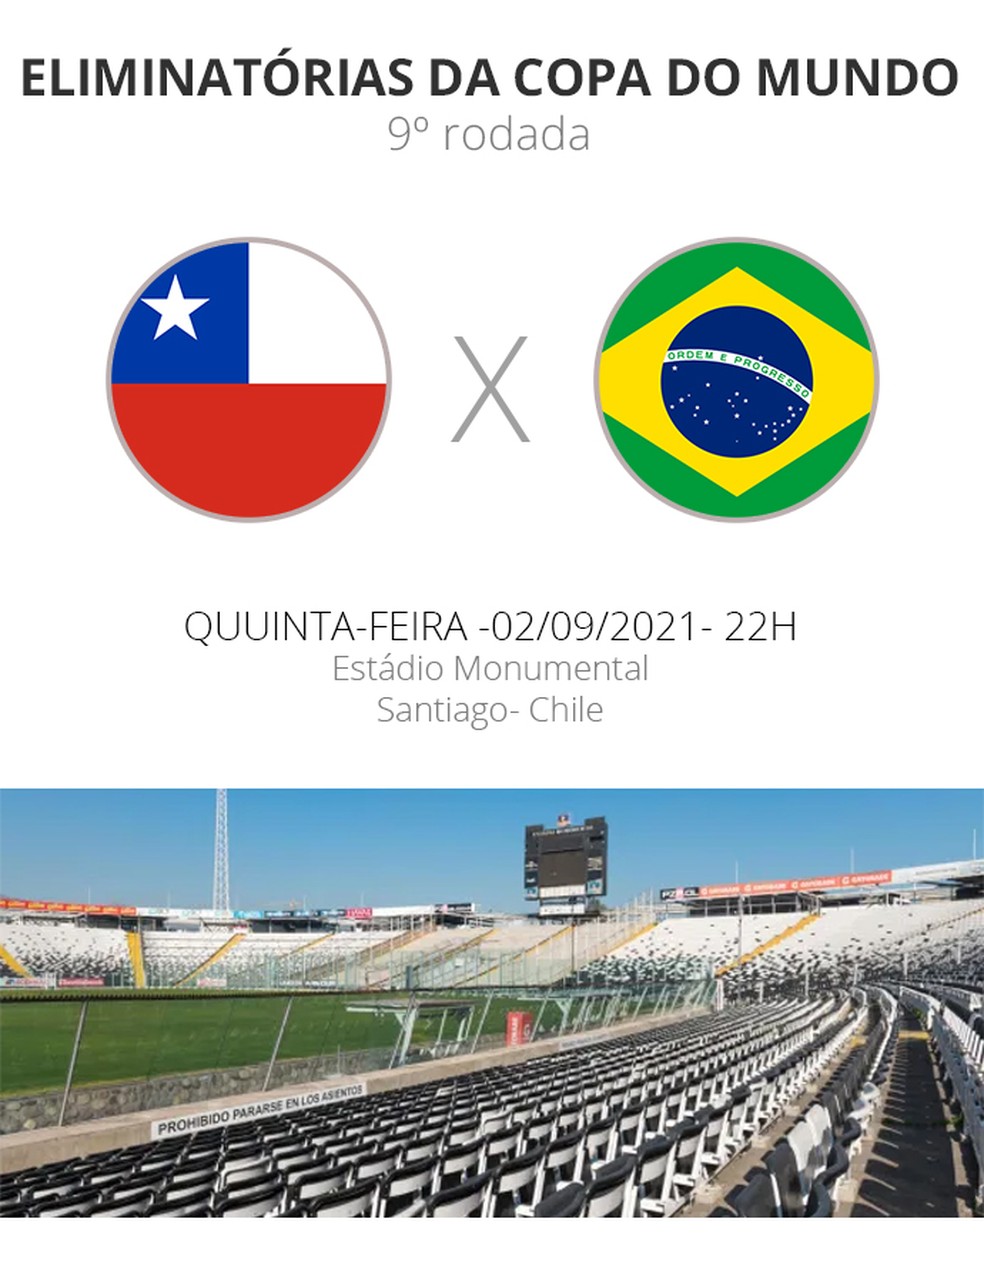 Saiba onde assistir ao vivo os jogos da Copa do Nordeste 2021